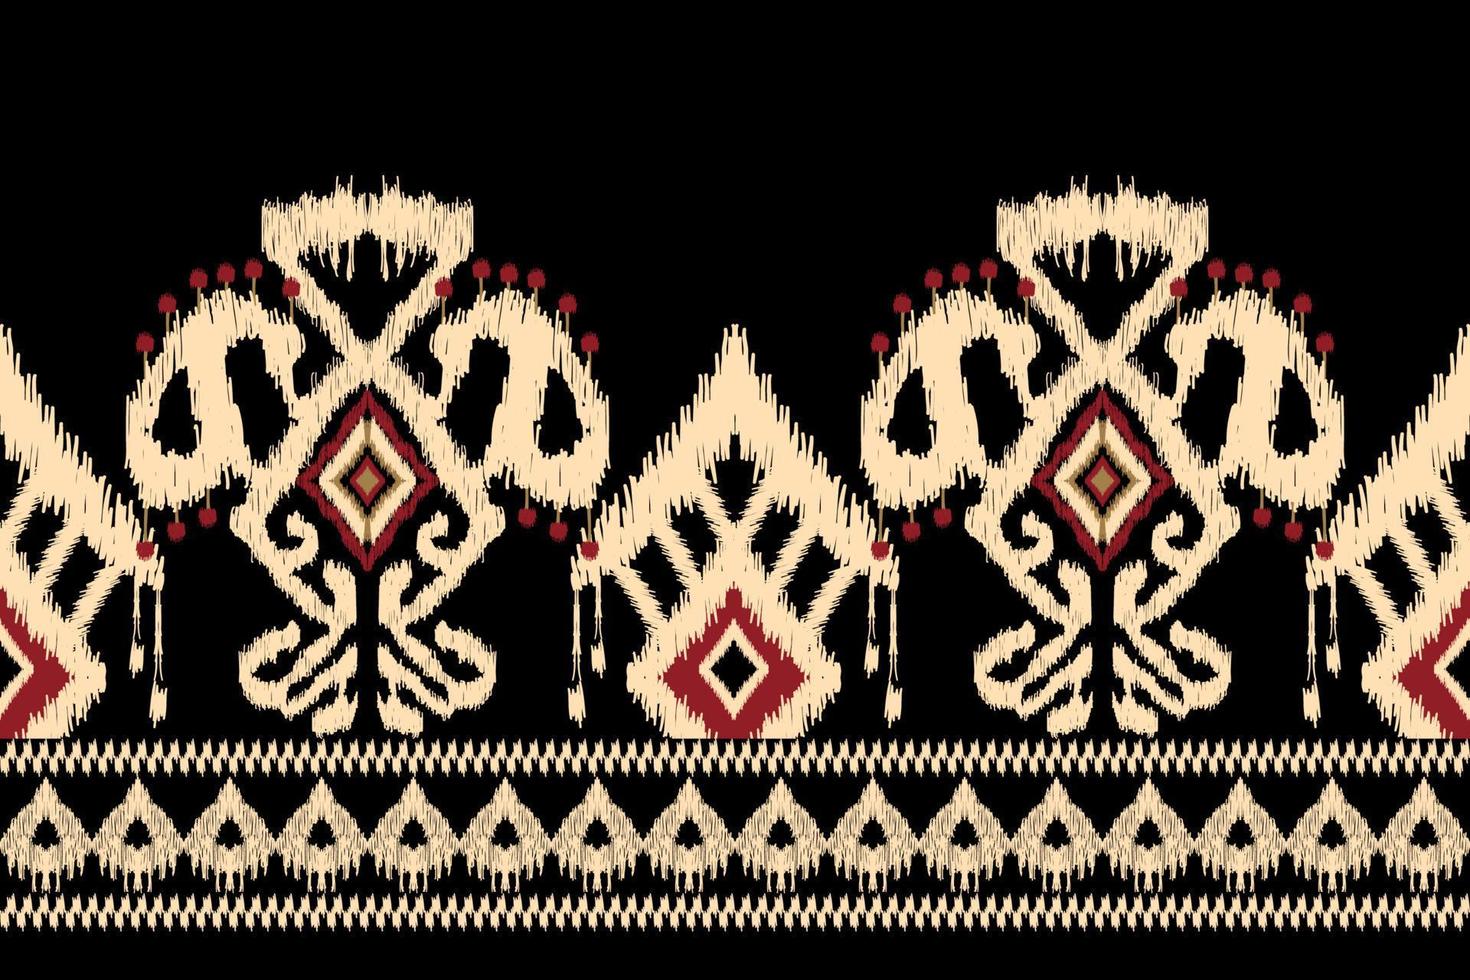 bordado floral ikat paisley sobre fondo negro.patrón oriental étnico geométrico tradicional.ilustración vectorial abstracta de estilo azteca.diseño para textura,tela,ropa,envoltura,decoración,sarong. vector